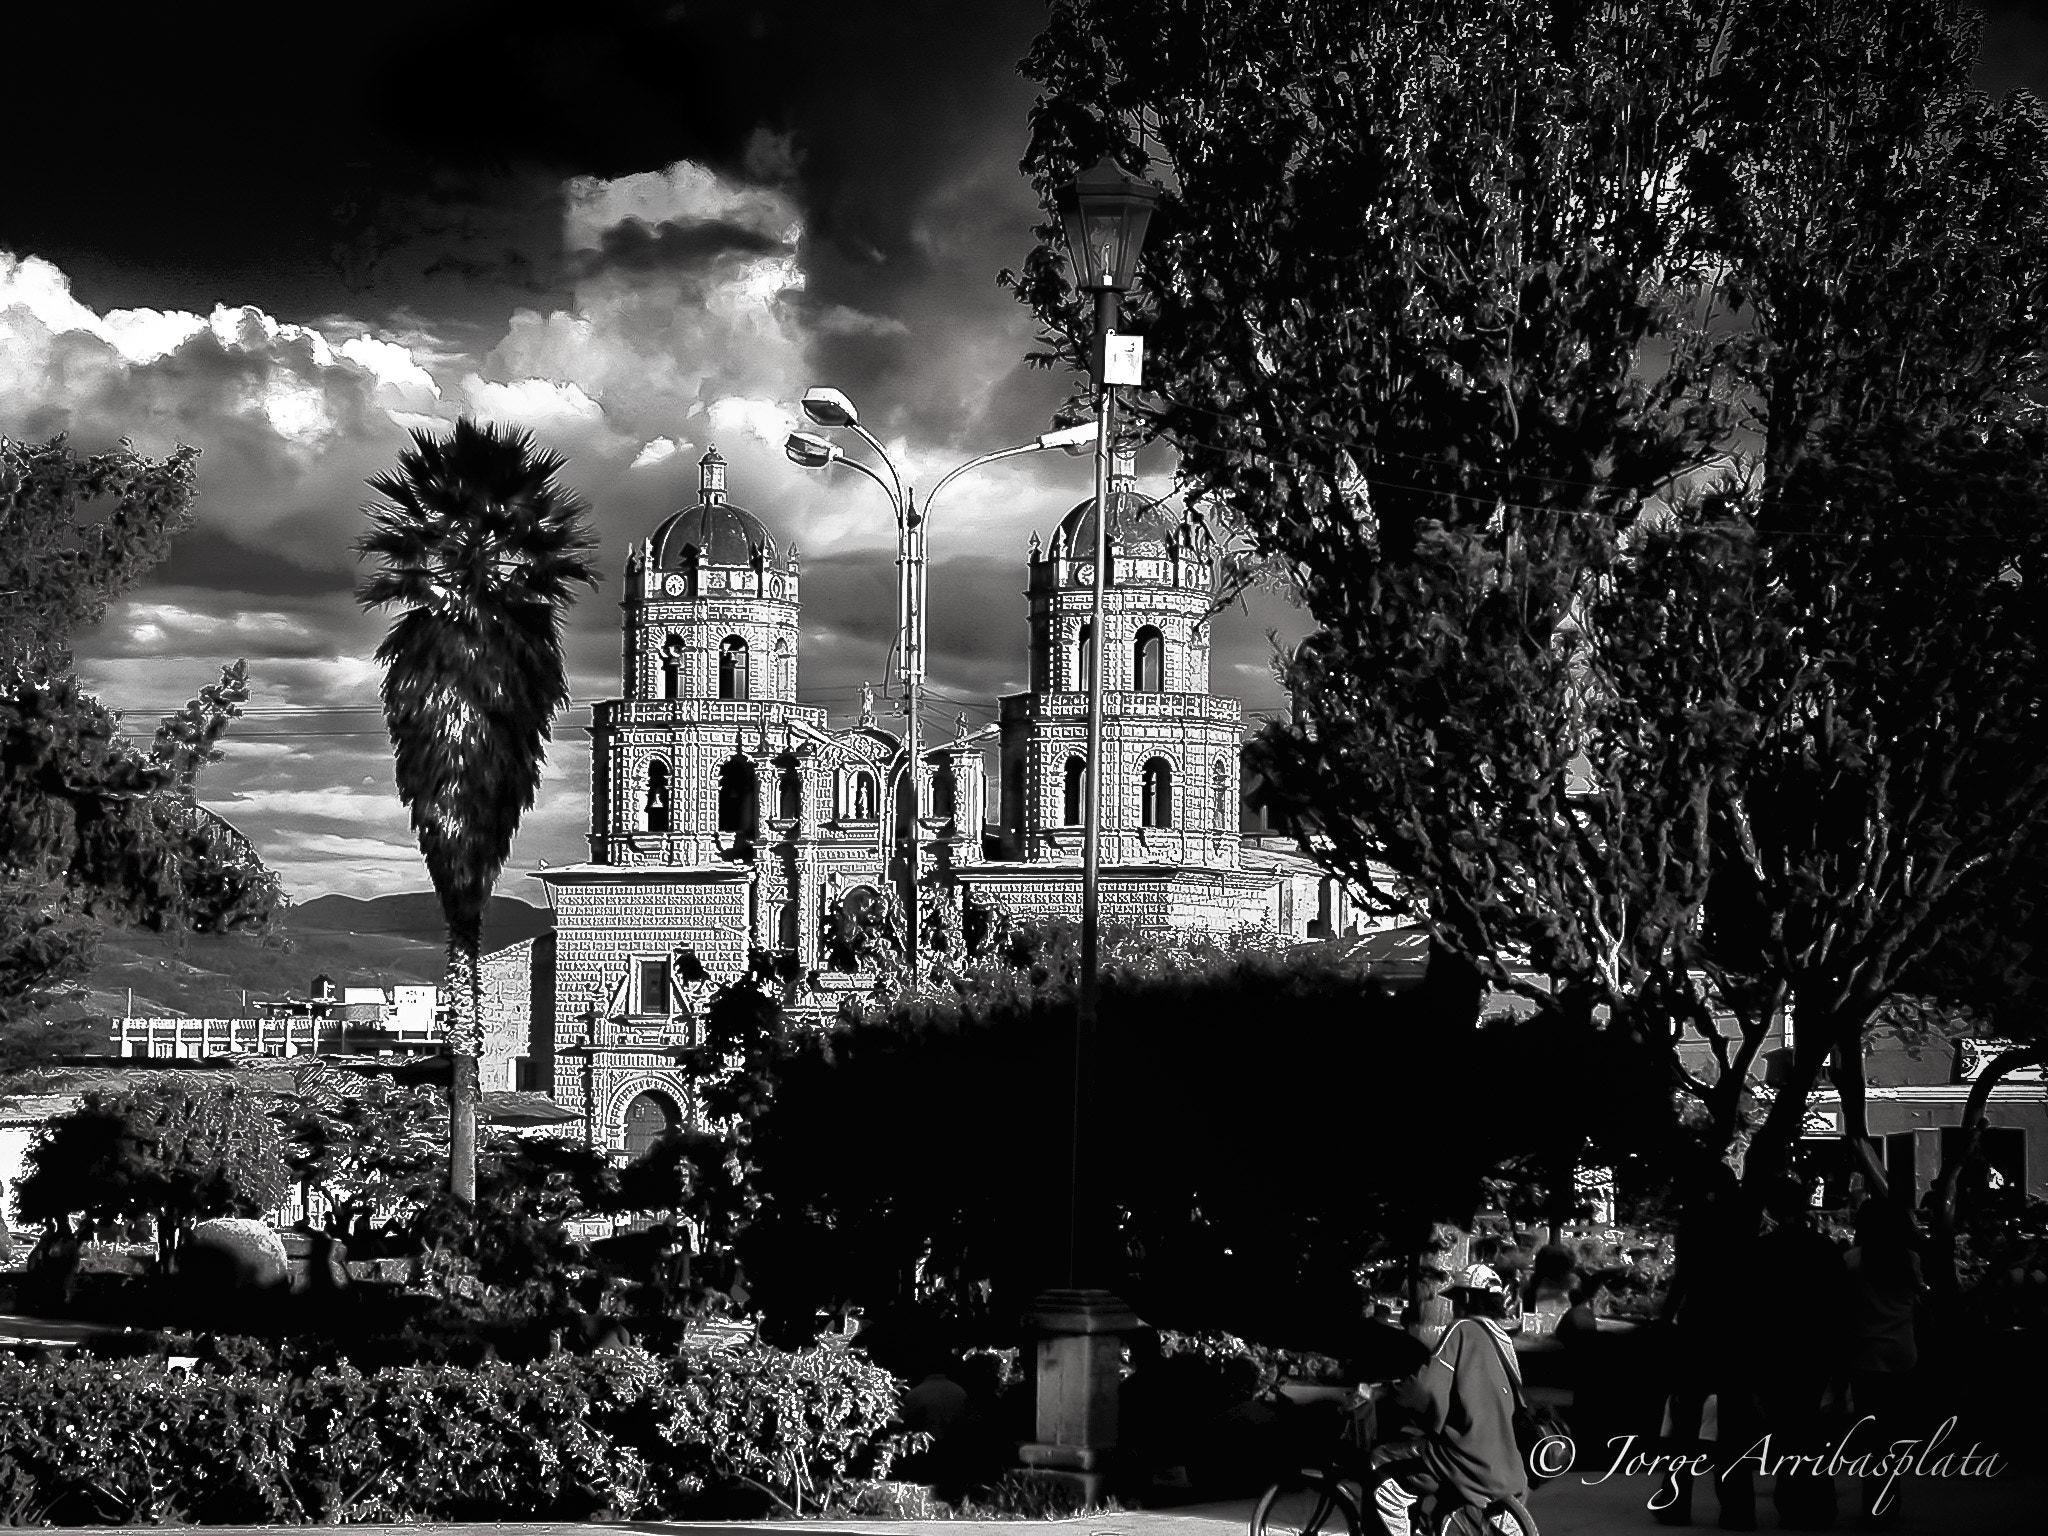 Nikon E995 sample photo. San francisco church-cajamarca, perú photography